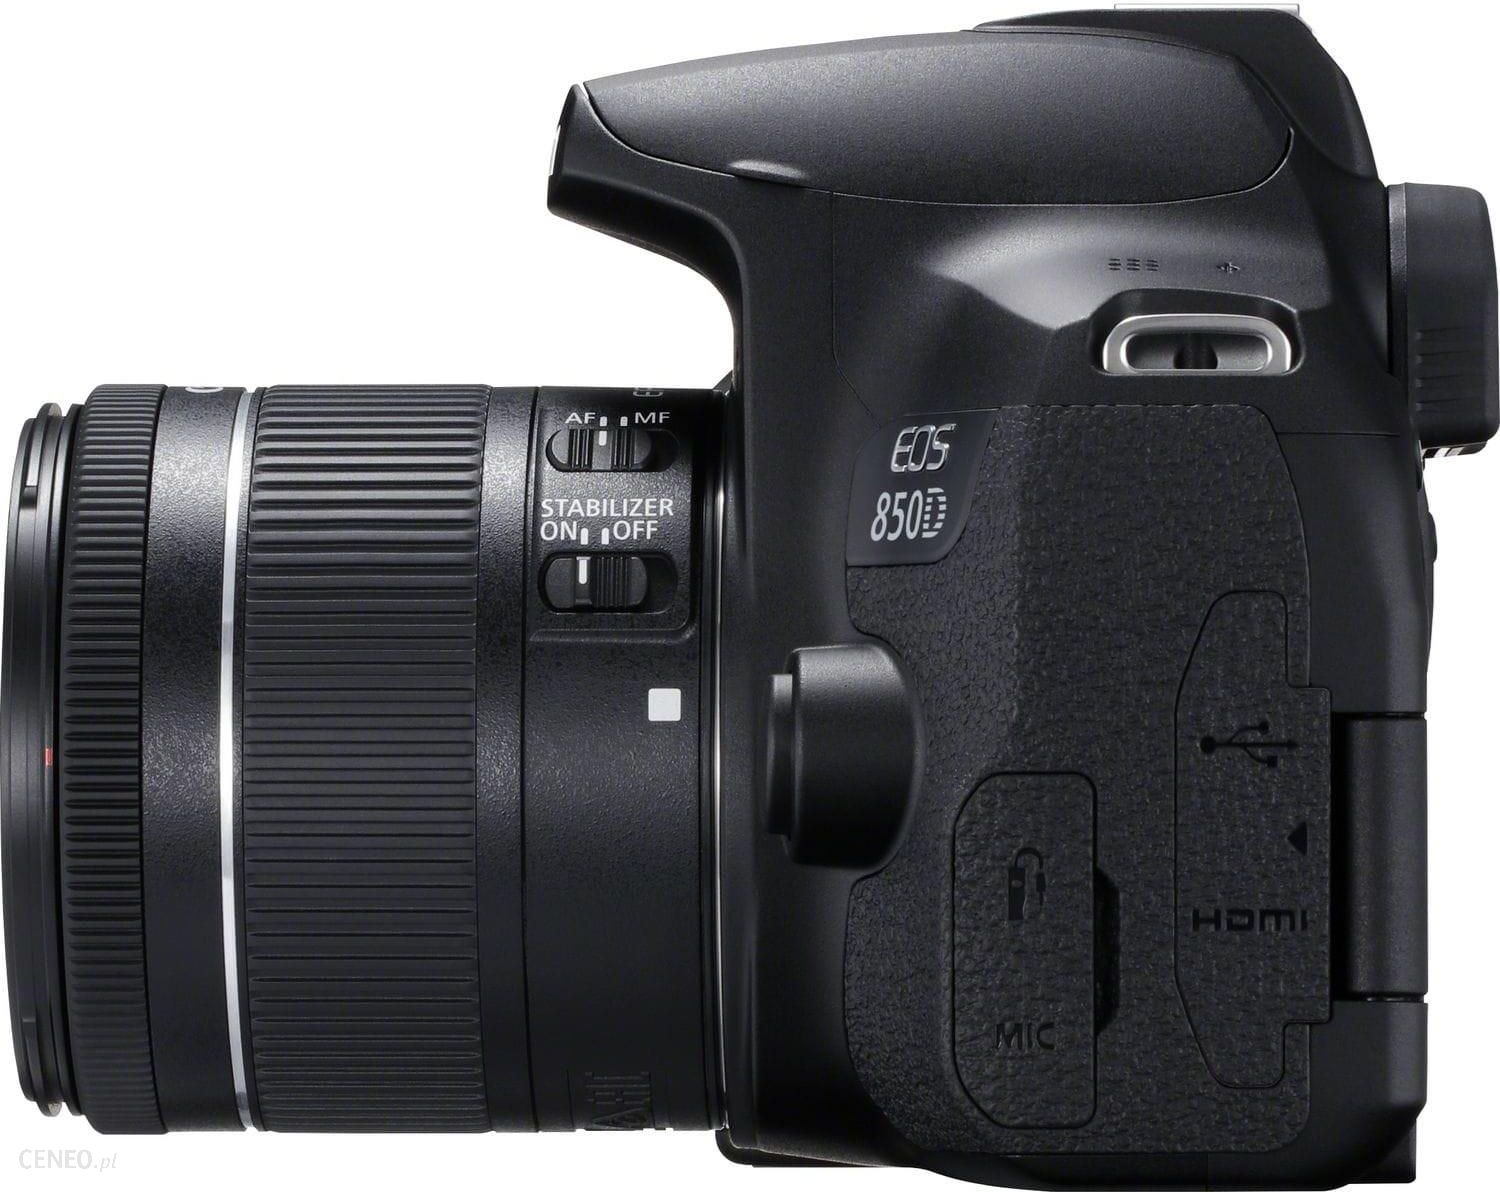 Canon EOS 850D body Czarny (3925C001)